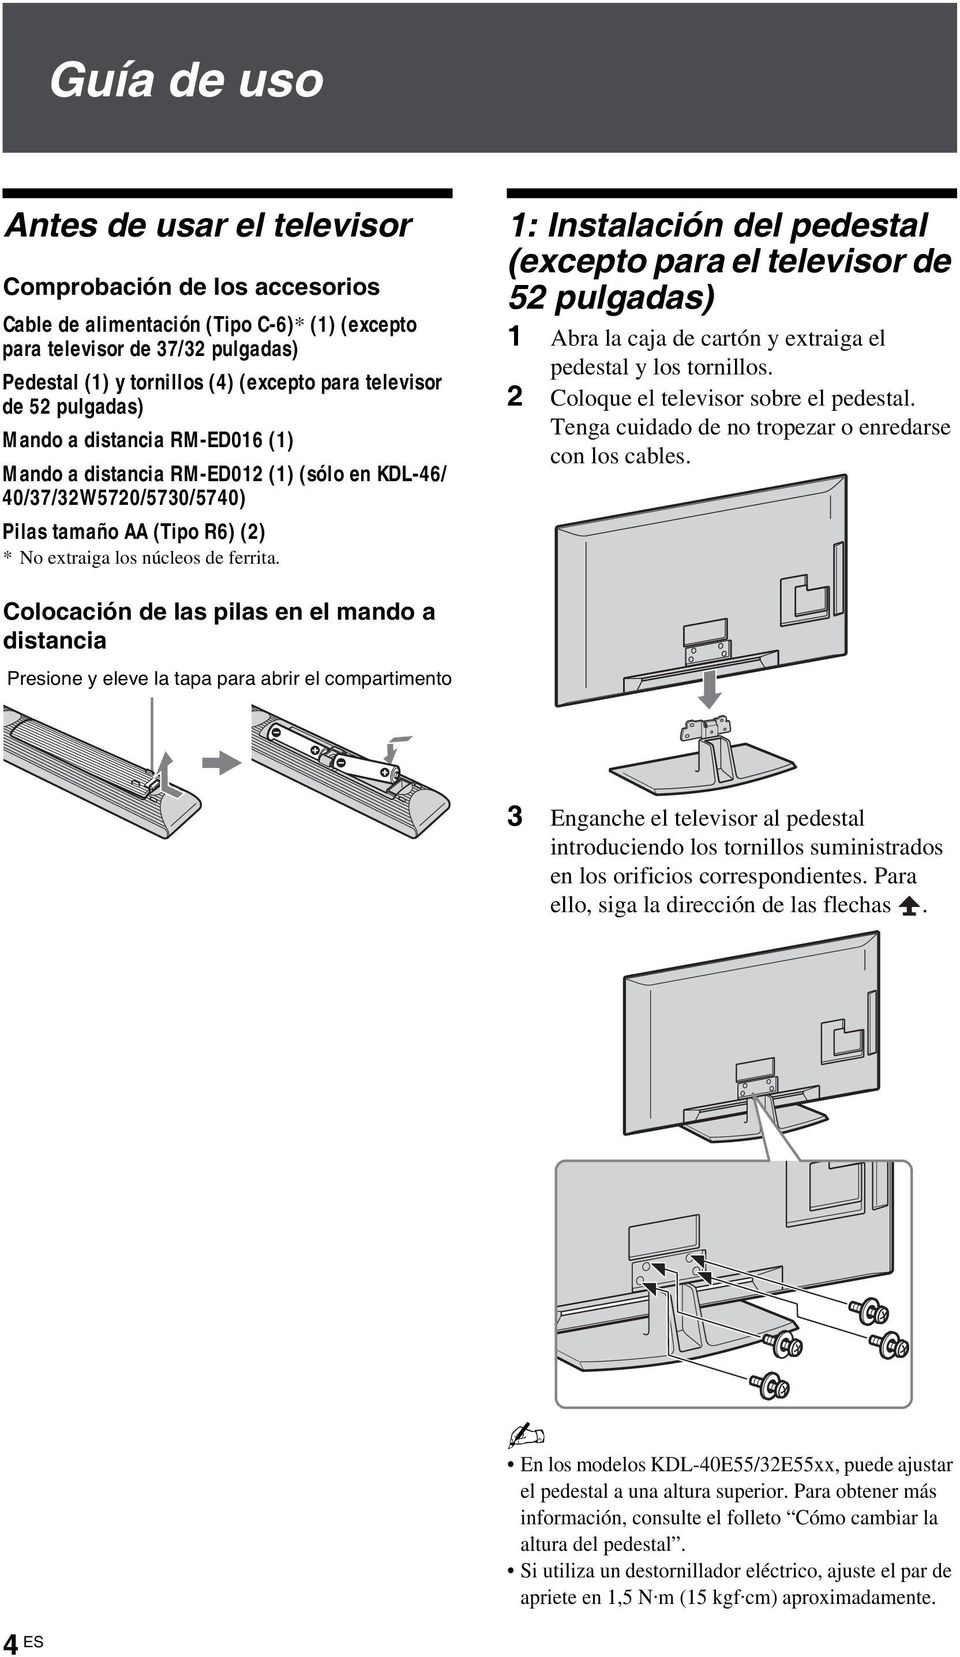 1: Instalación del pedestal (excepto para el televisor de 52 pulgadas) 1 Abra la caja de cartón y extraiga el pedestal y los tornillos. 2 Coloque el televisor sobre el pedestal.